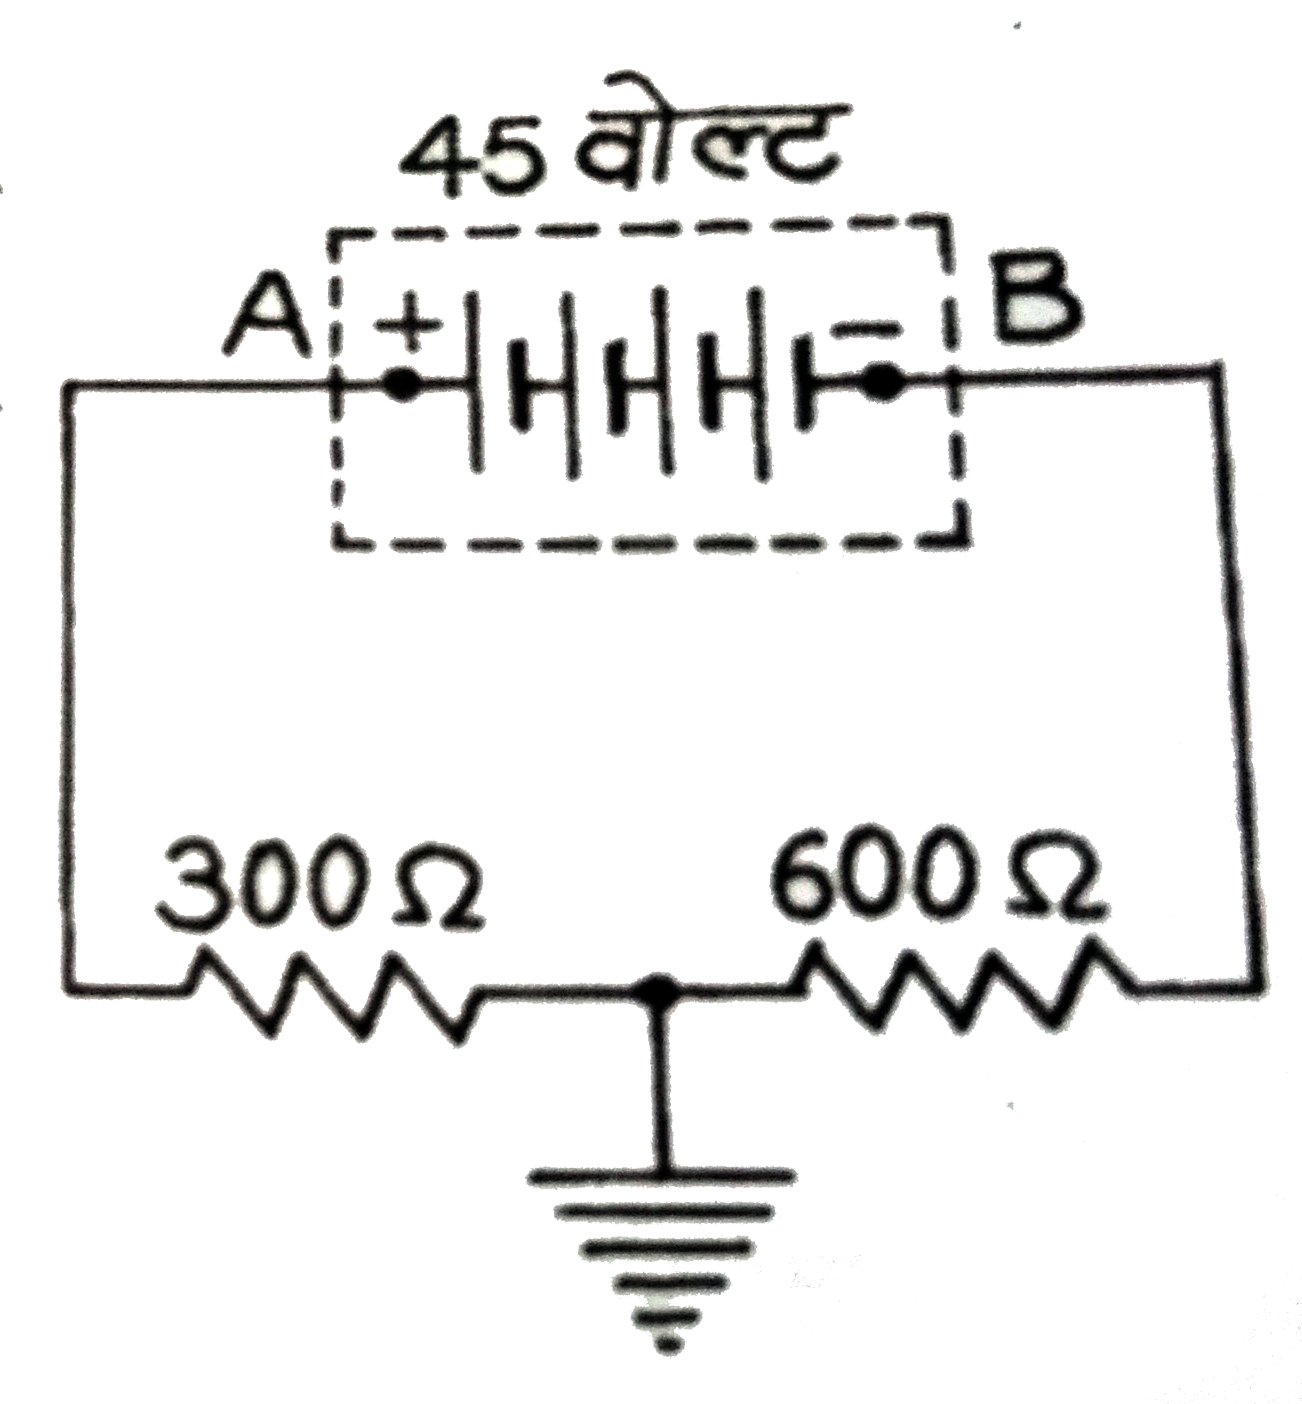 संलग्न परिपथ  में प्रदर्शित  45  वोल्ट कि बैटरी  ( आंतरिक  प्रतिरोध  शून्य ) के   प्रत्येक  टर्मिनल  A व  B   का  पृथ्वी  के सापेक्ष  विभव  ज्ञात  कीजिए ।